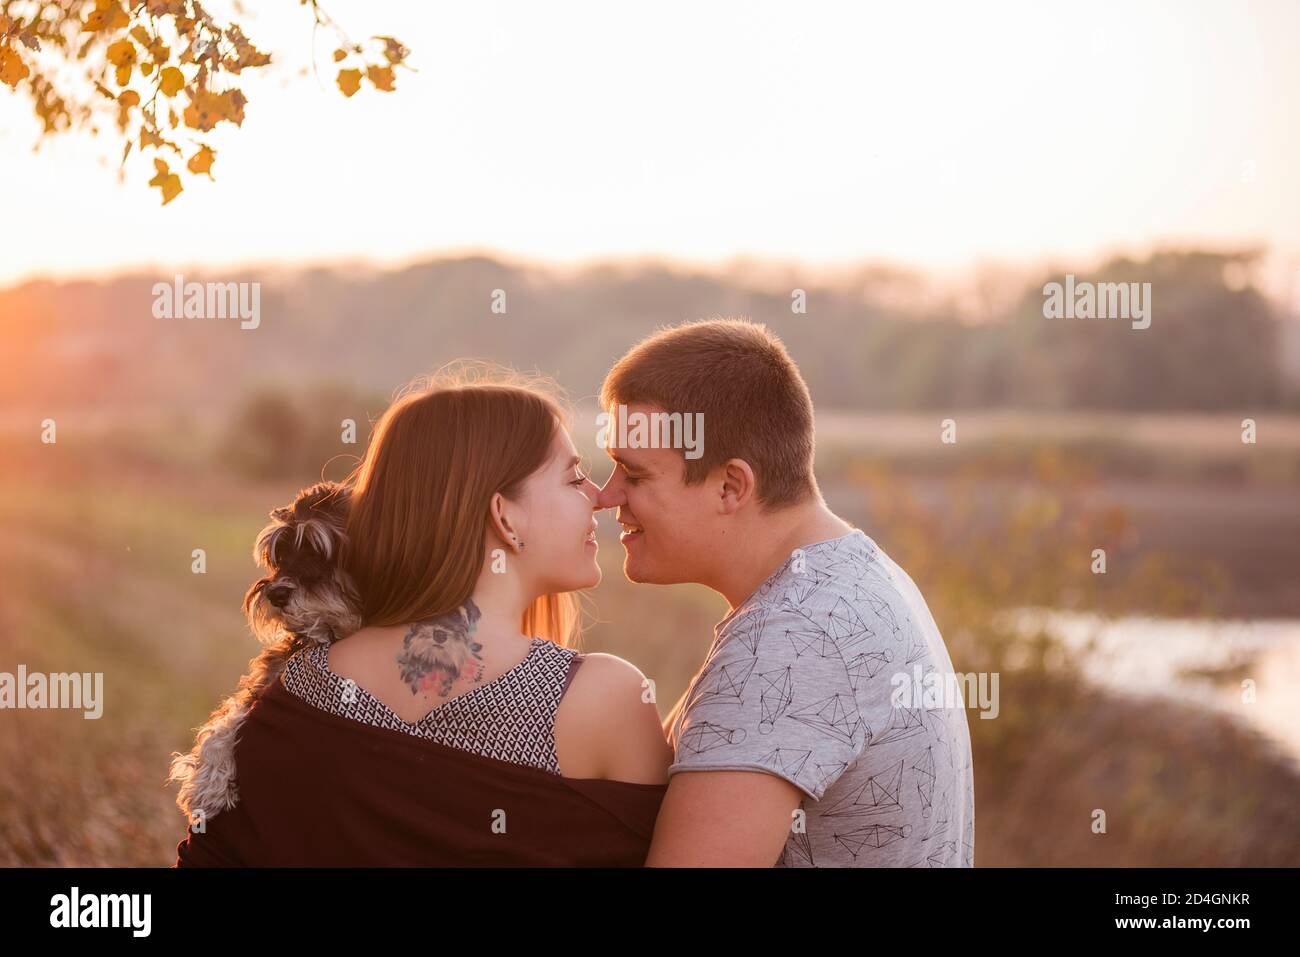 Una coppia in abbracci d'amore, bacia nei raggi del sole d'autunno, con le spalle girate verso la macchina fotografica, tenendo una Schnauzer tra le braccia. Bella ragazza Foto Stock